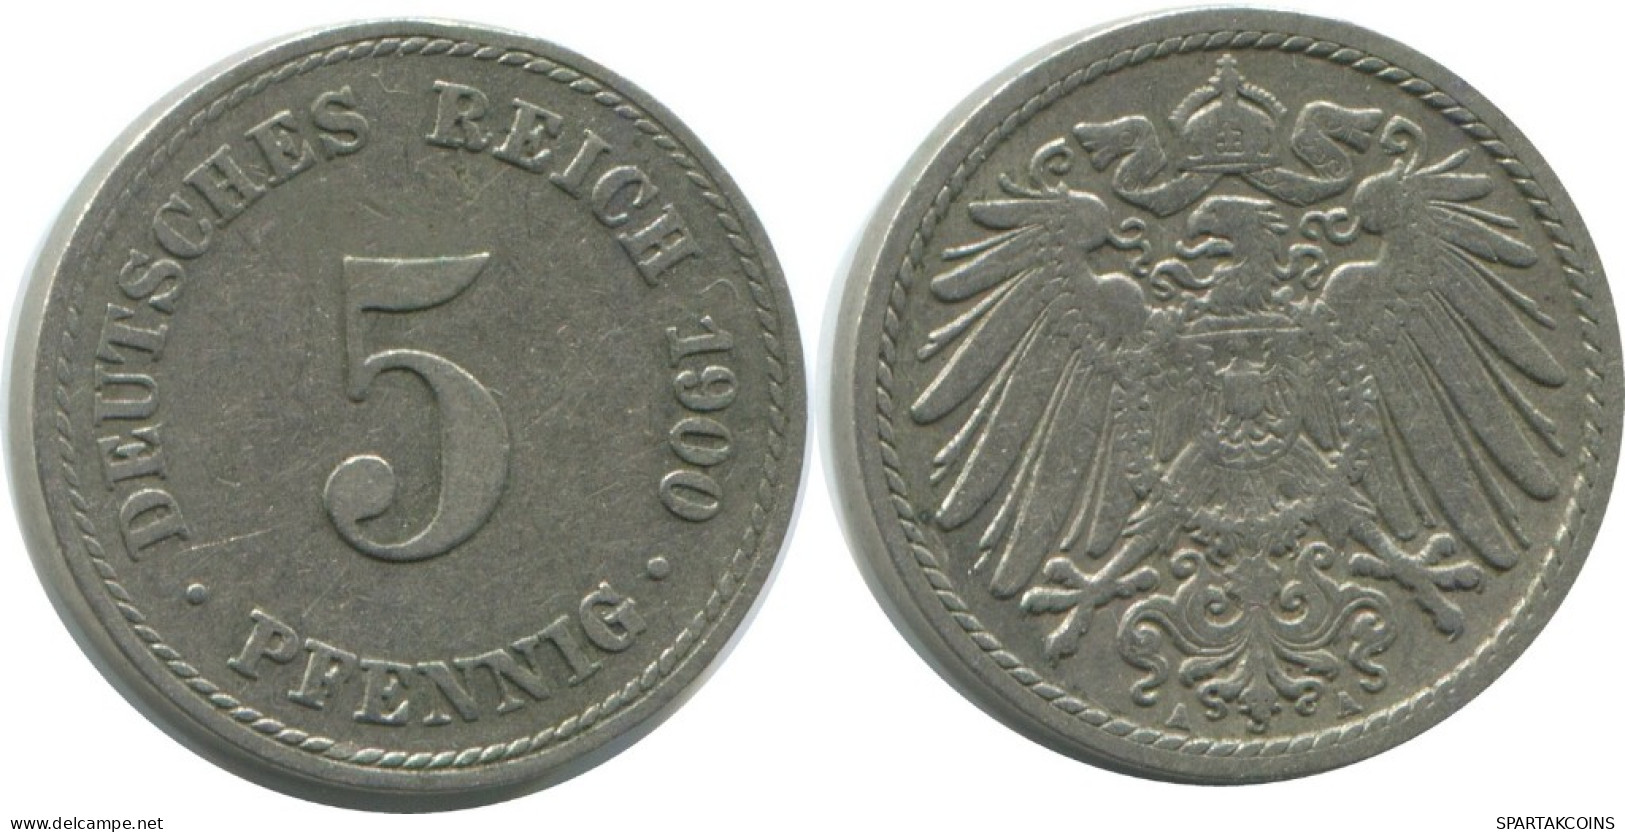 5 PFENNIG 1900 A GERMANY Coin #AE708.U.A - 5 Pfennig